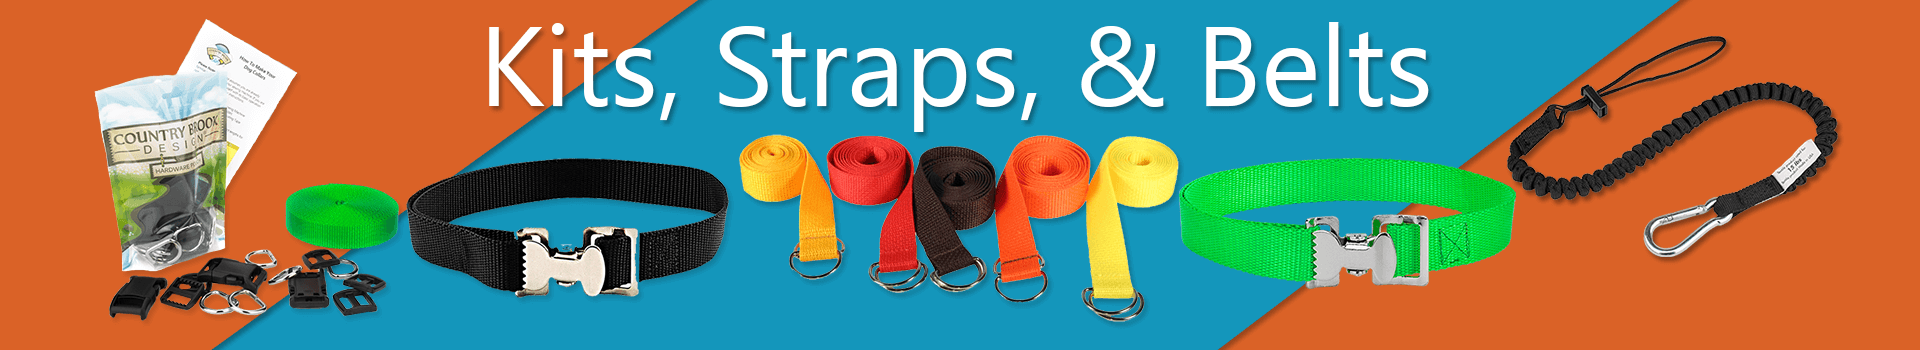 Kits, Straps, & Belts